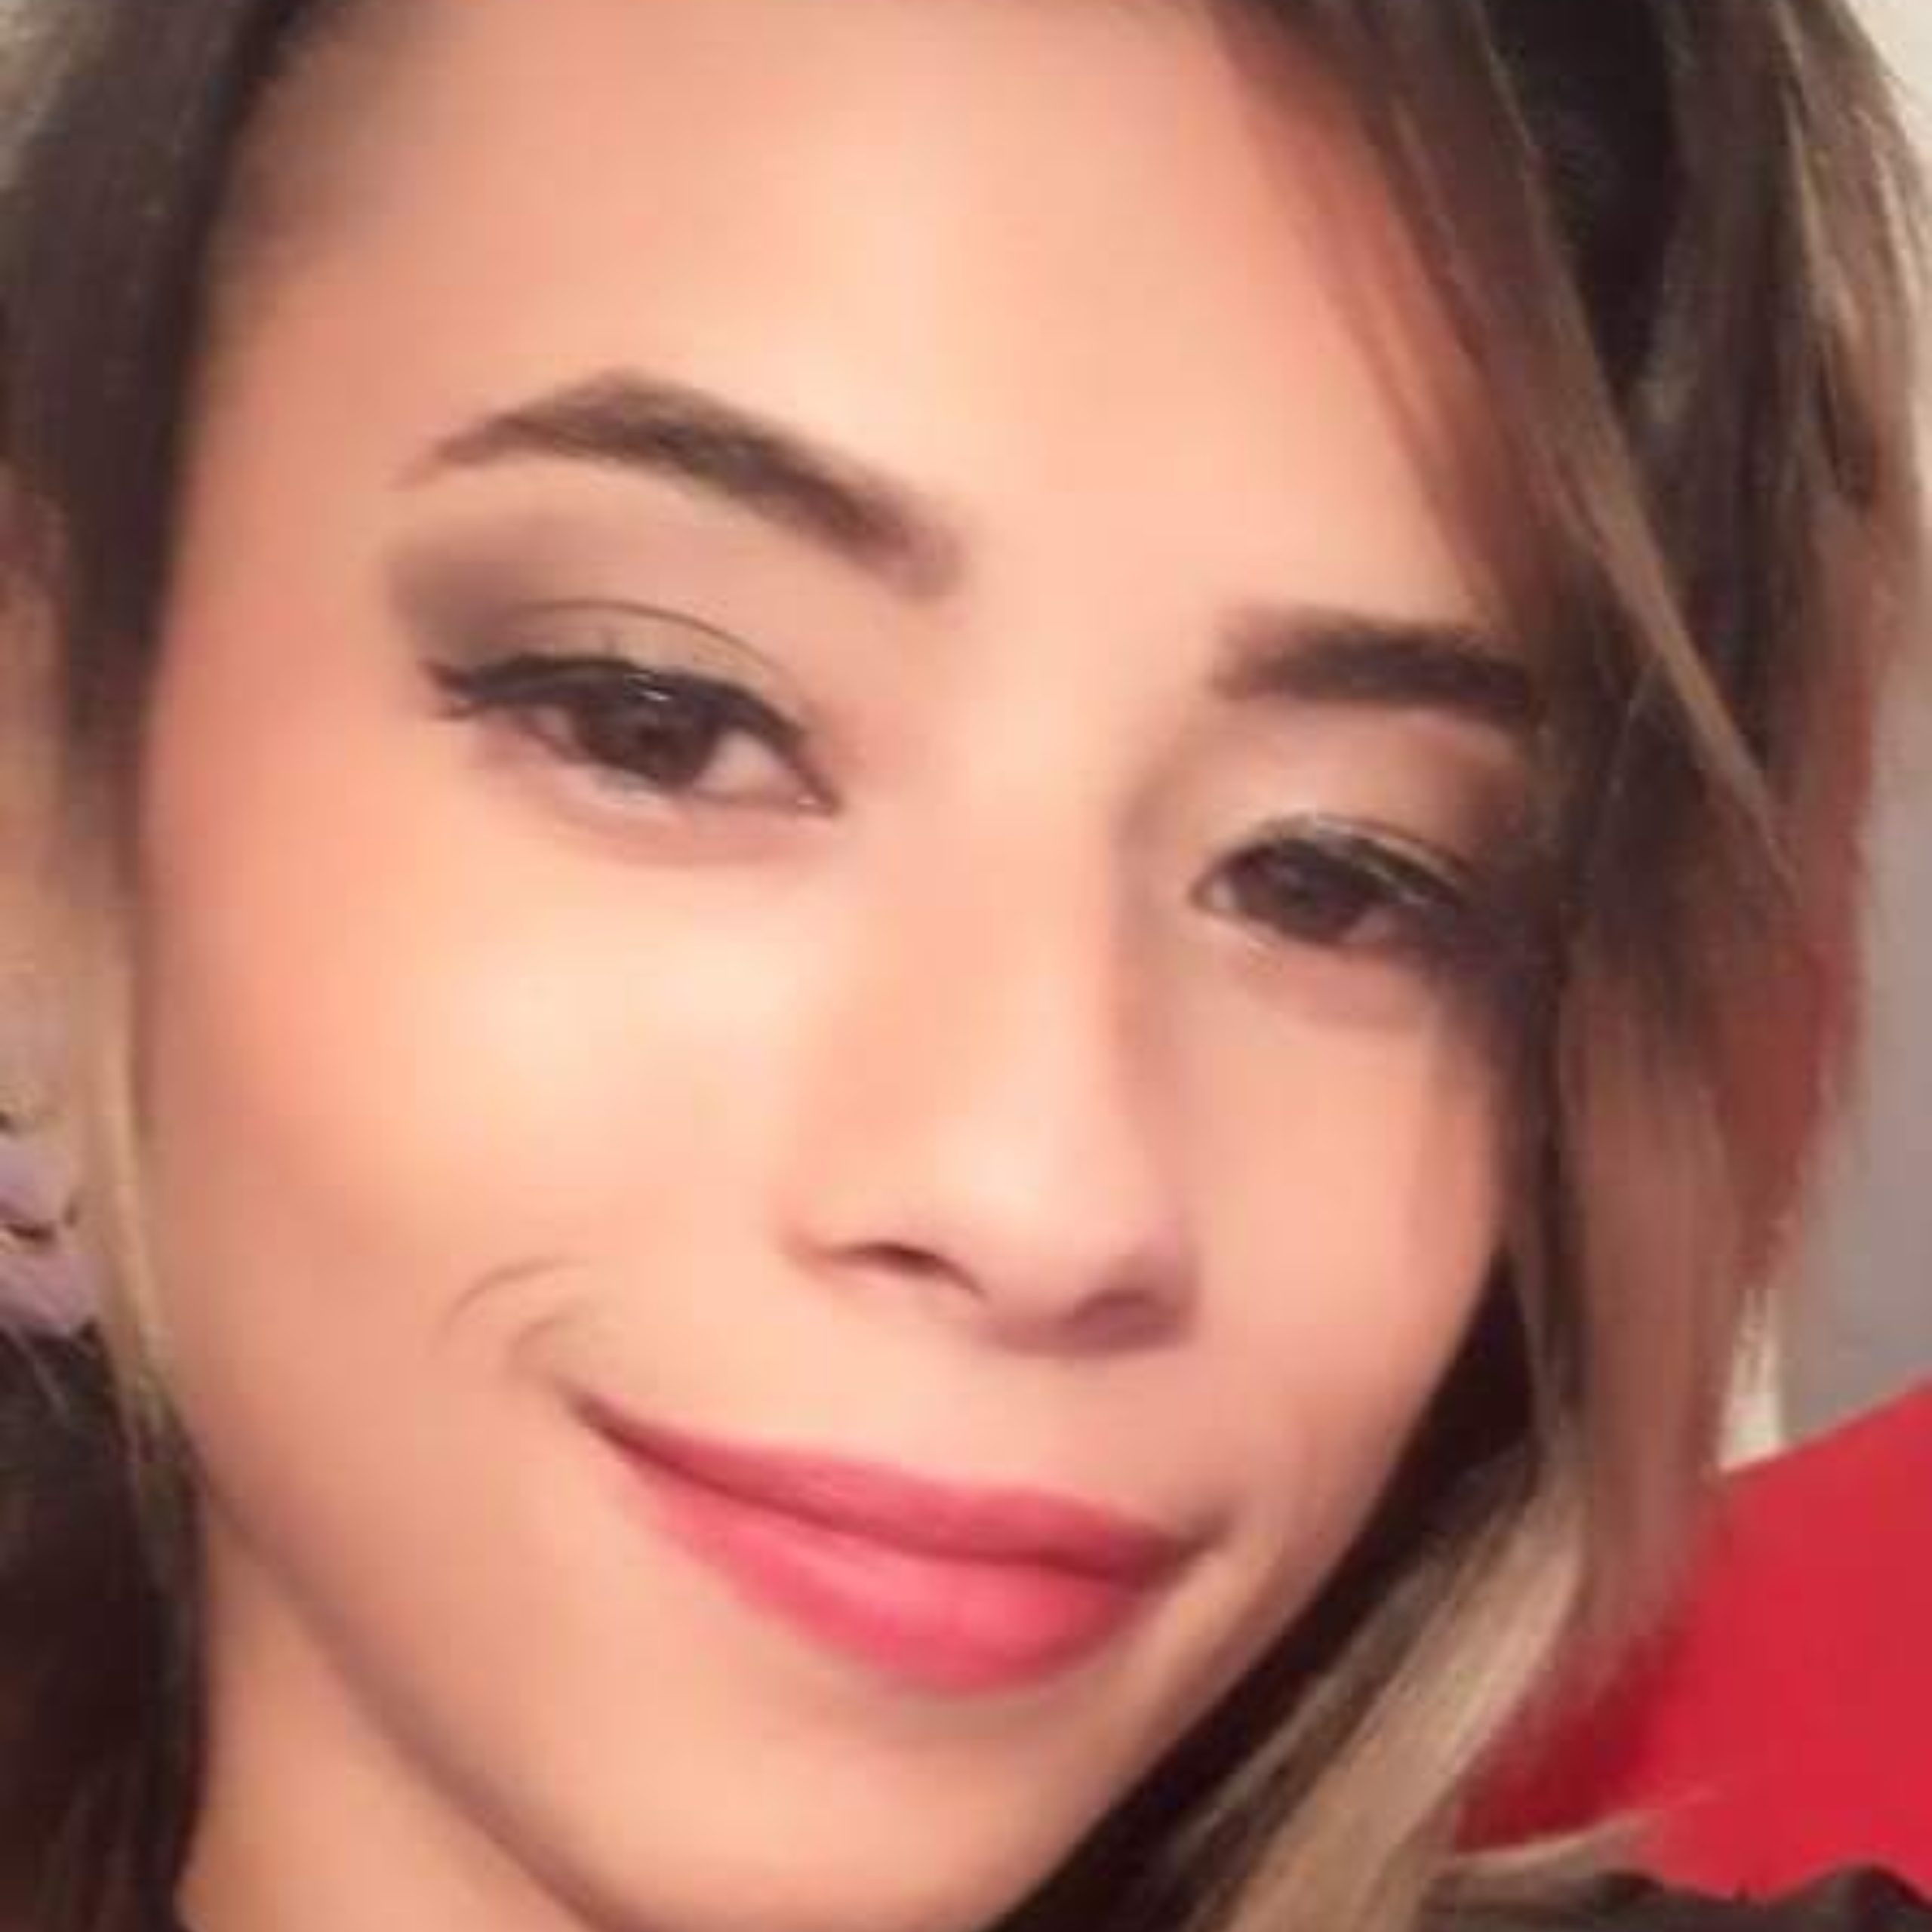  Elizane Cristina Gonçalves Nunes - desaparecida 